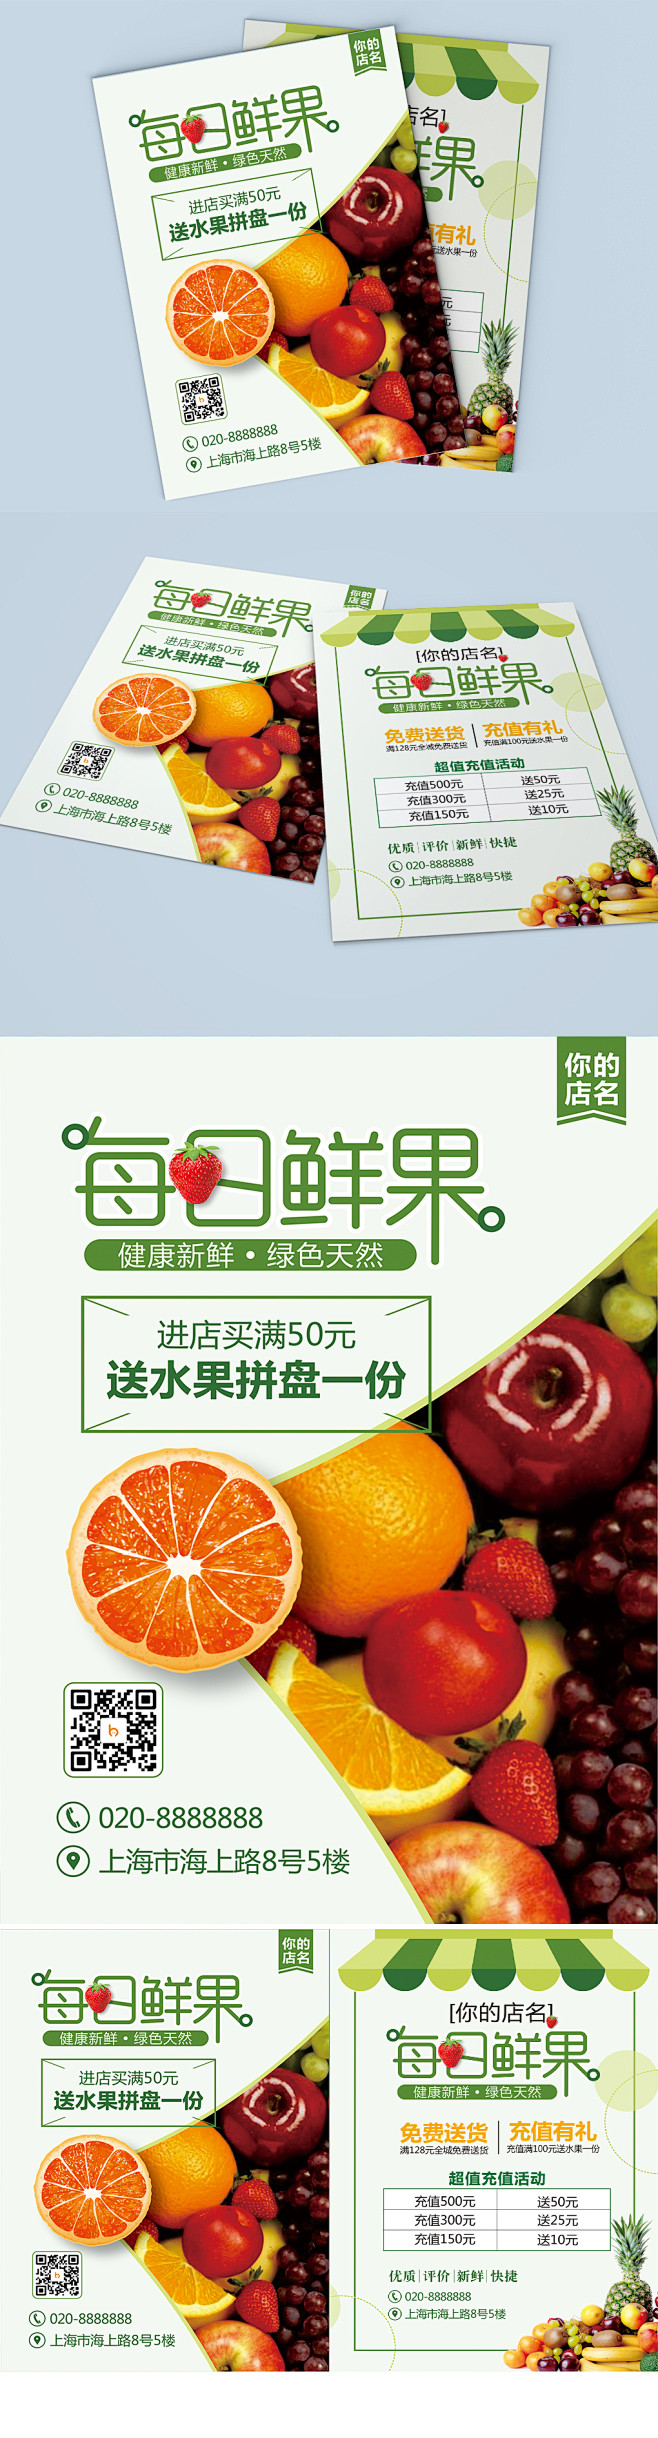 简约清新水果店宣传单